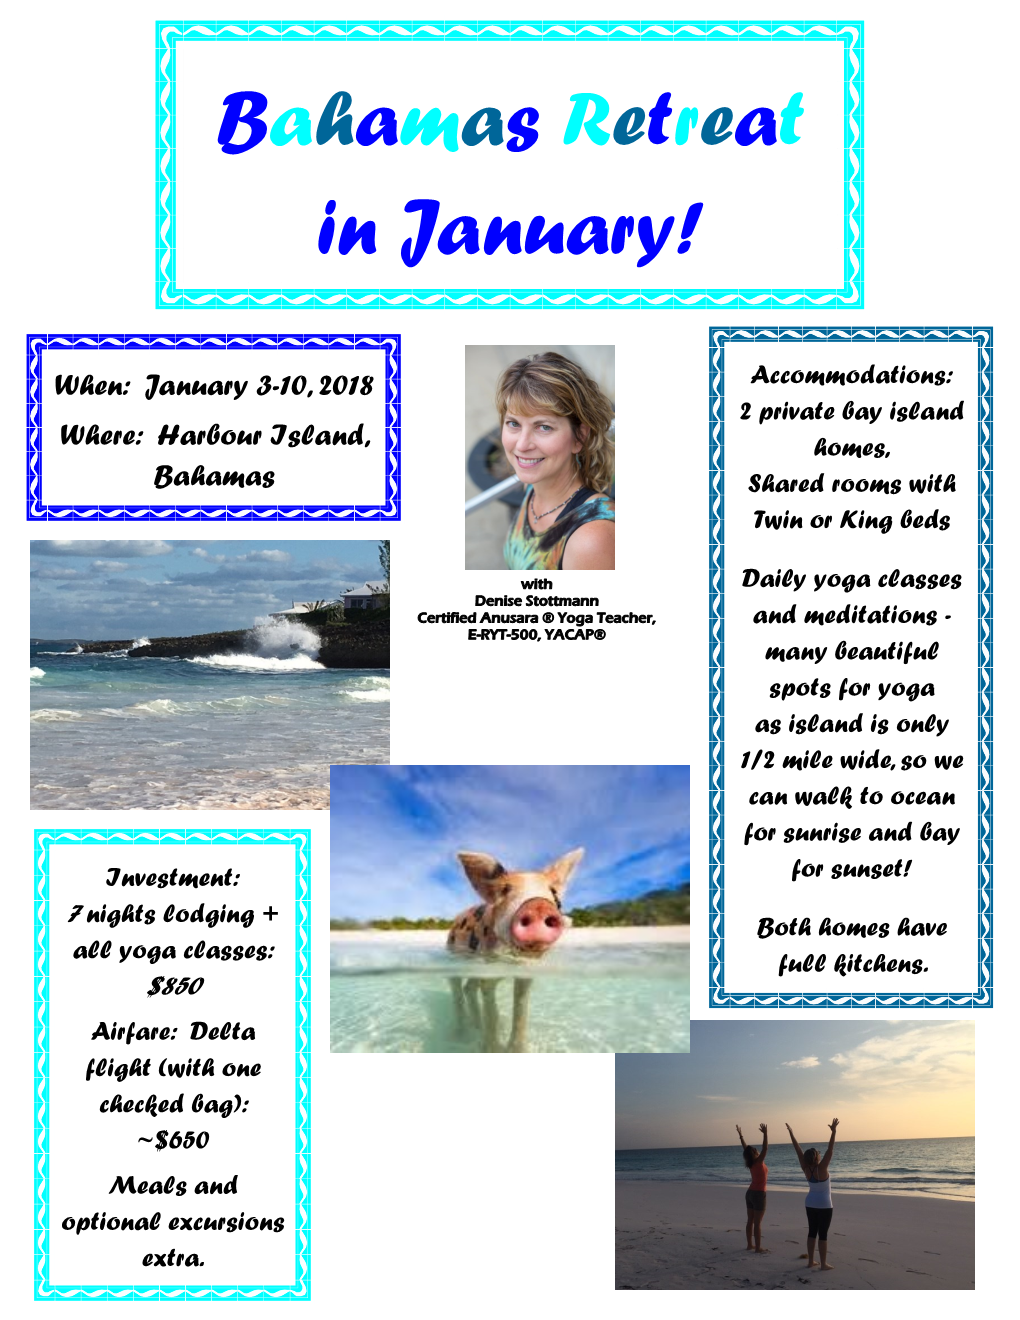 Bahamas Retreat in January!